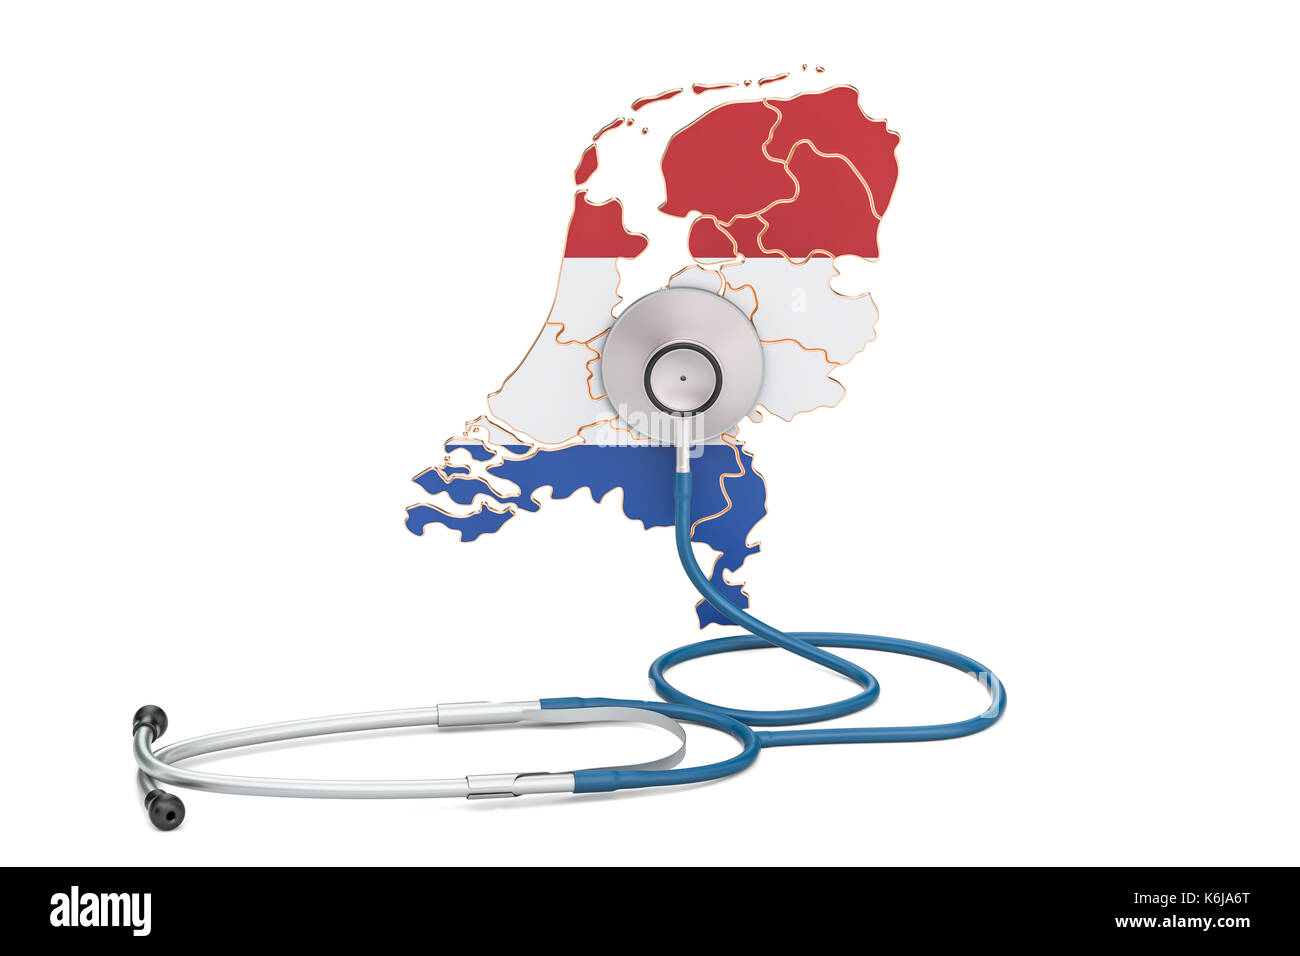 Niederlande Karte mit Stethoskop, national Health Care Concept, 3D-Rendering Stockfoto